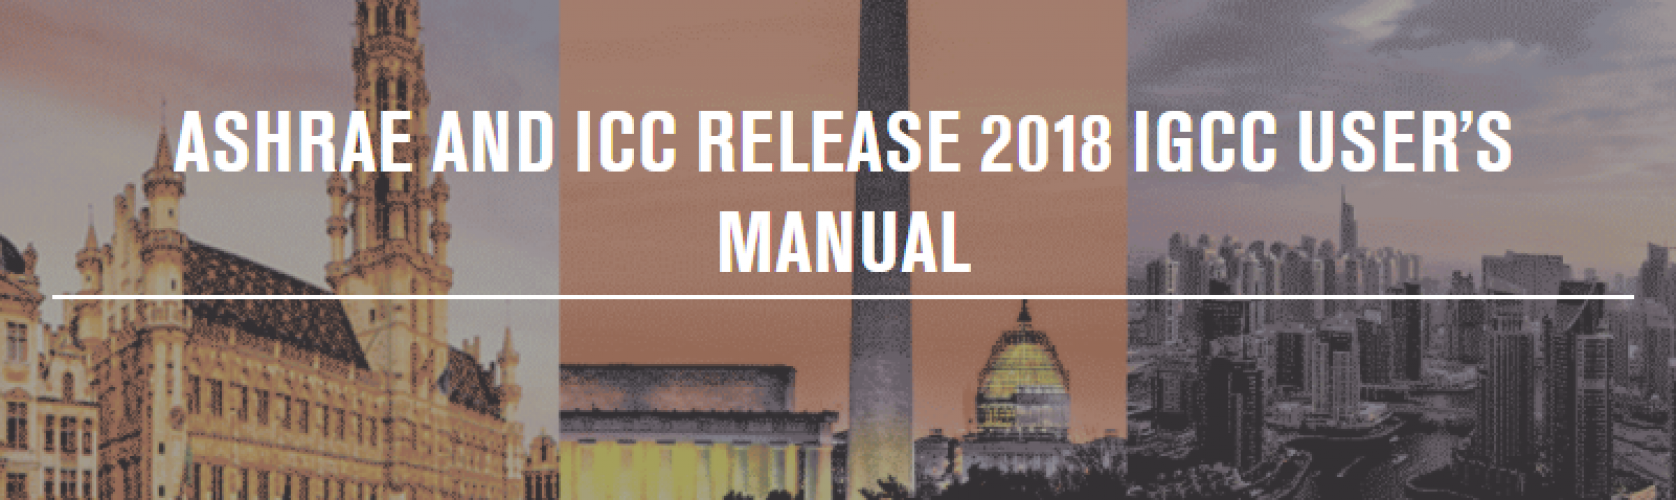 ashrae-and-icc-release-2018-igcc-user’s-manual